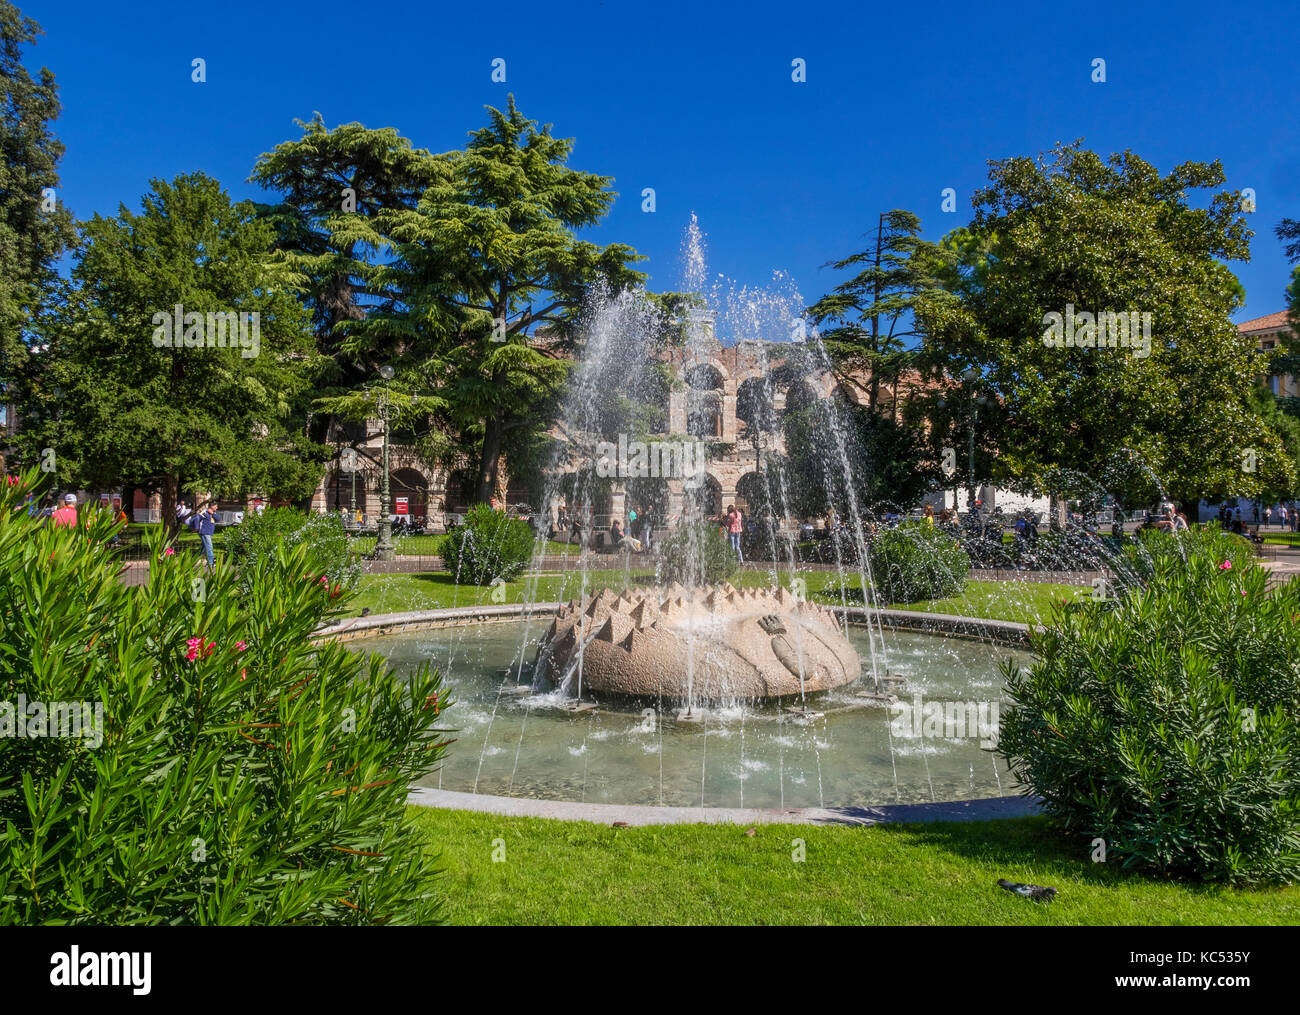 Fountain in the park at Piazza Bra, Verona, Veneto, Italy, Europe Stock Photo